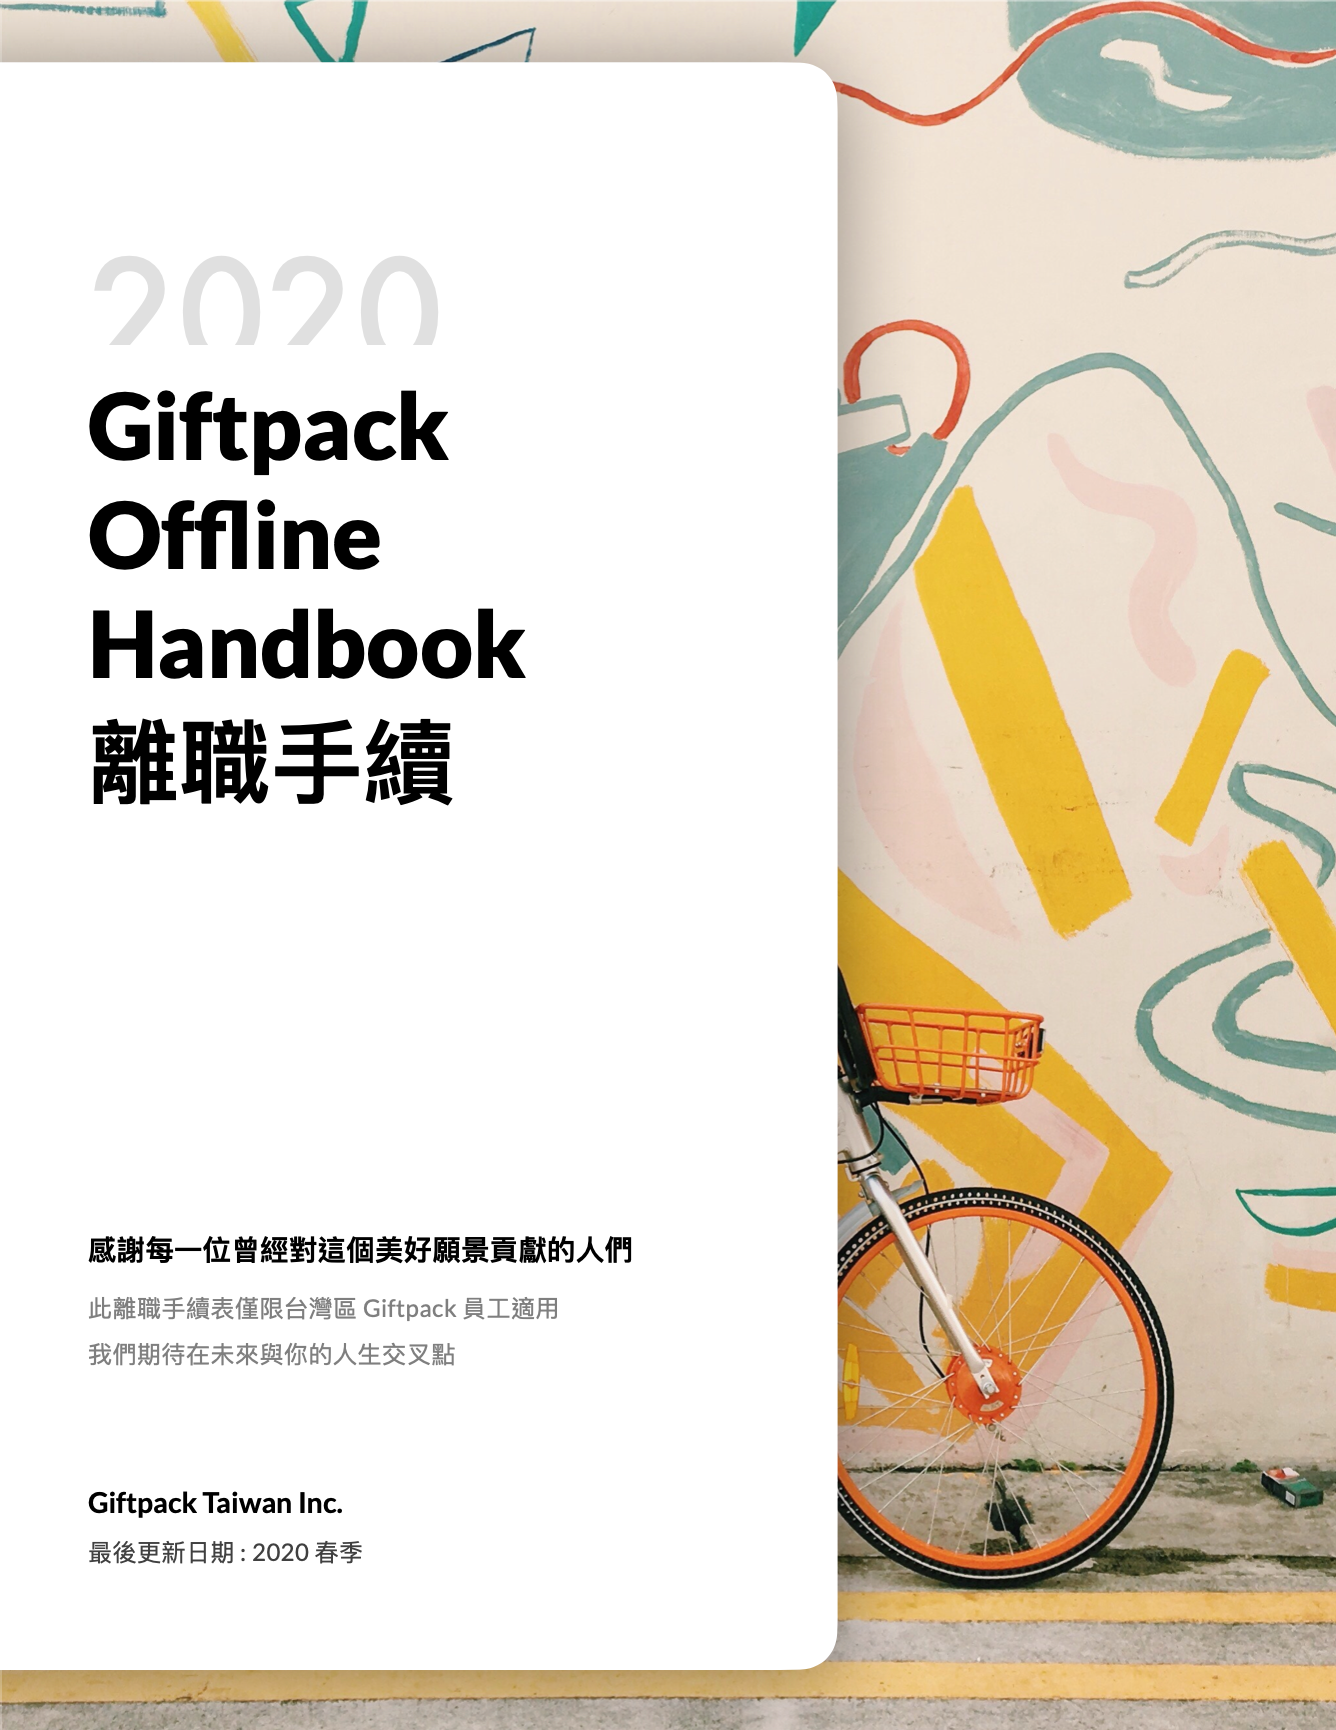 giftpack offline handbook